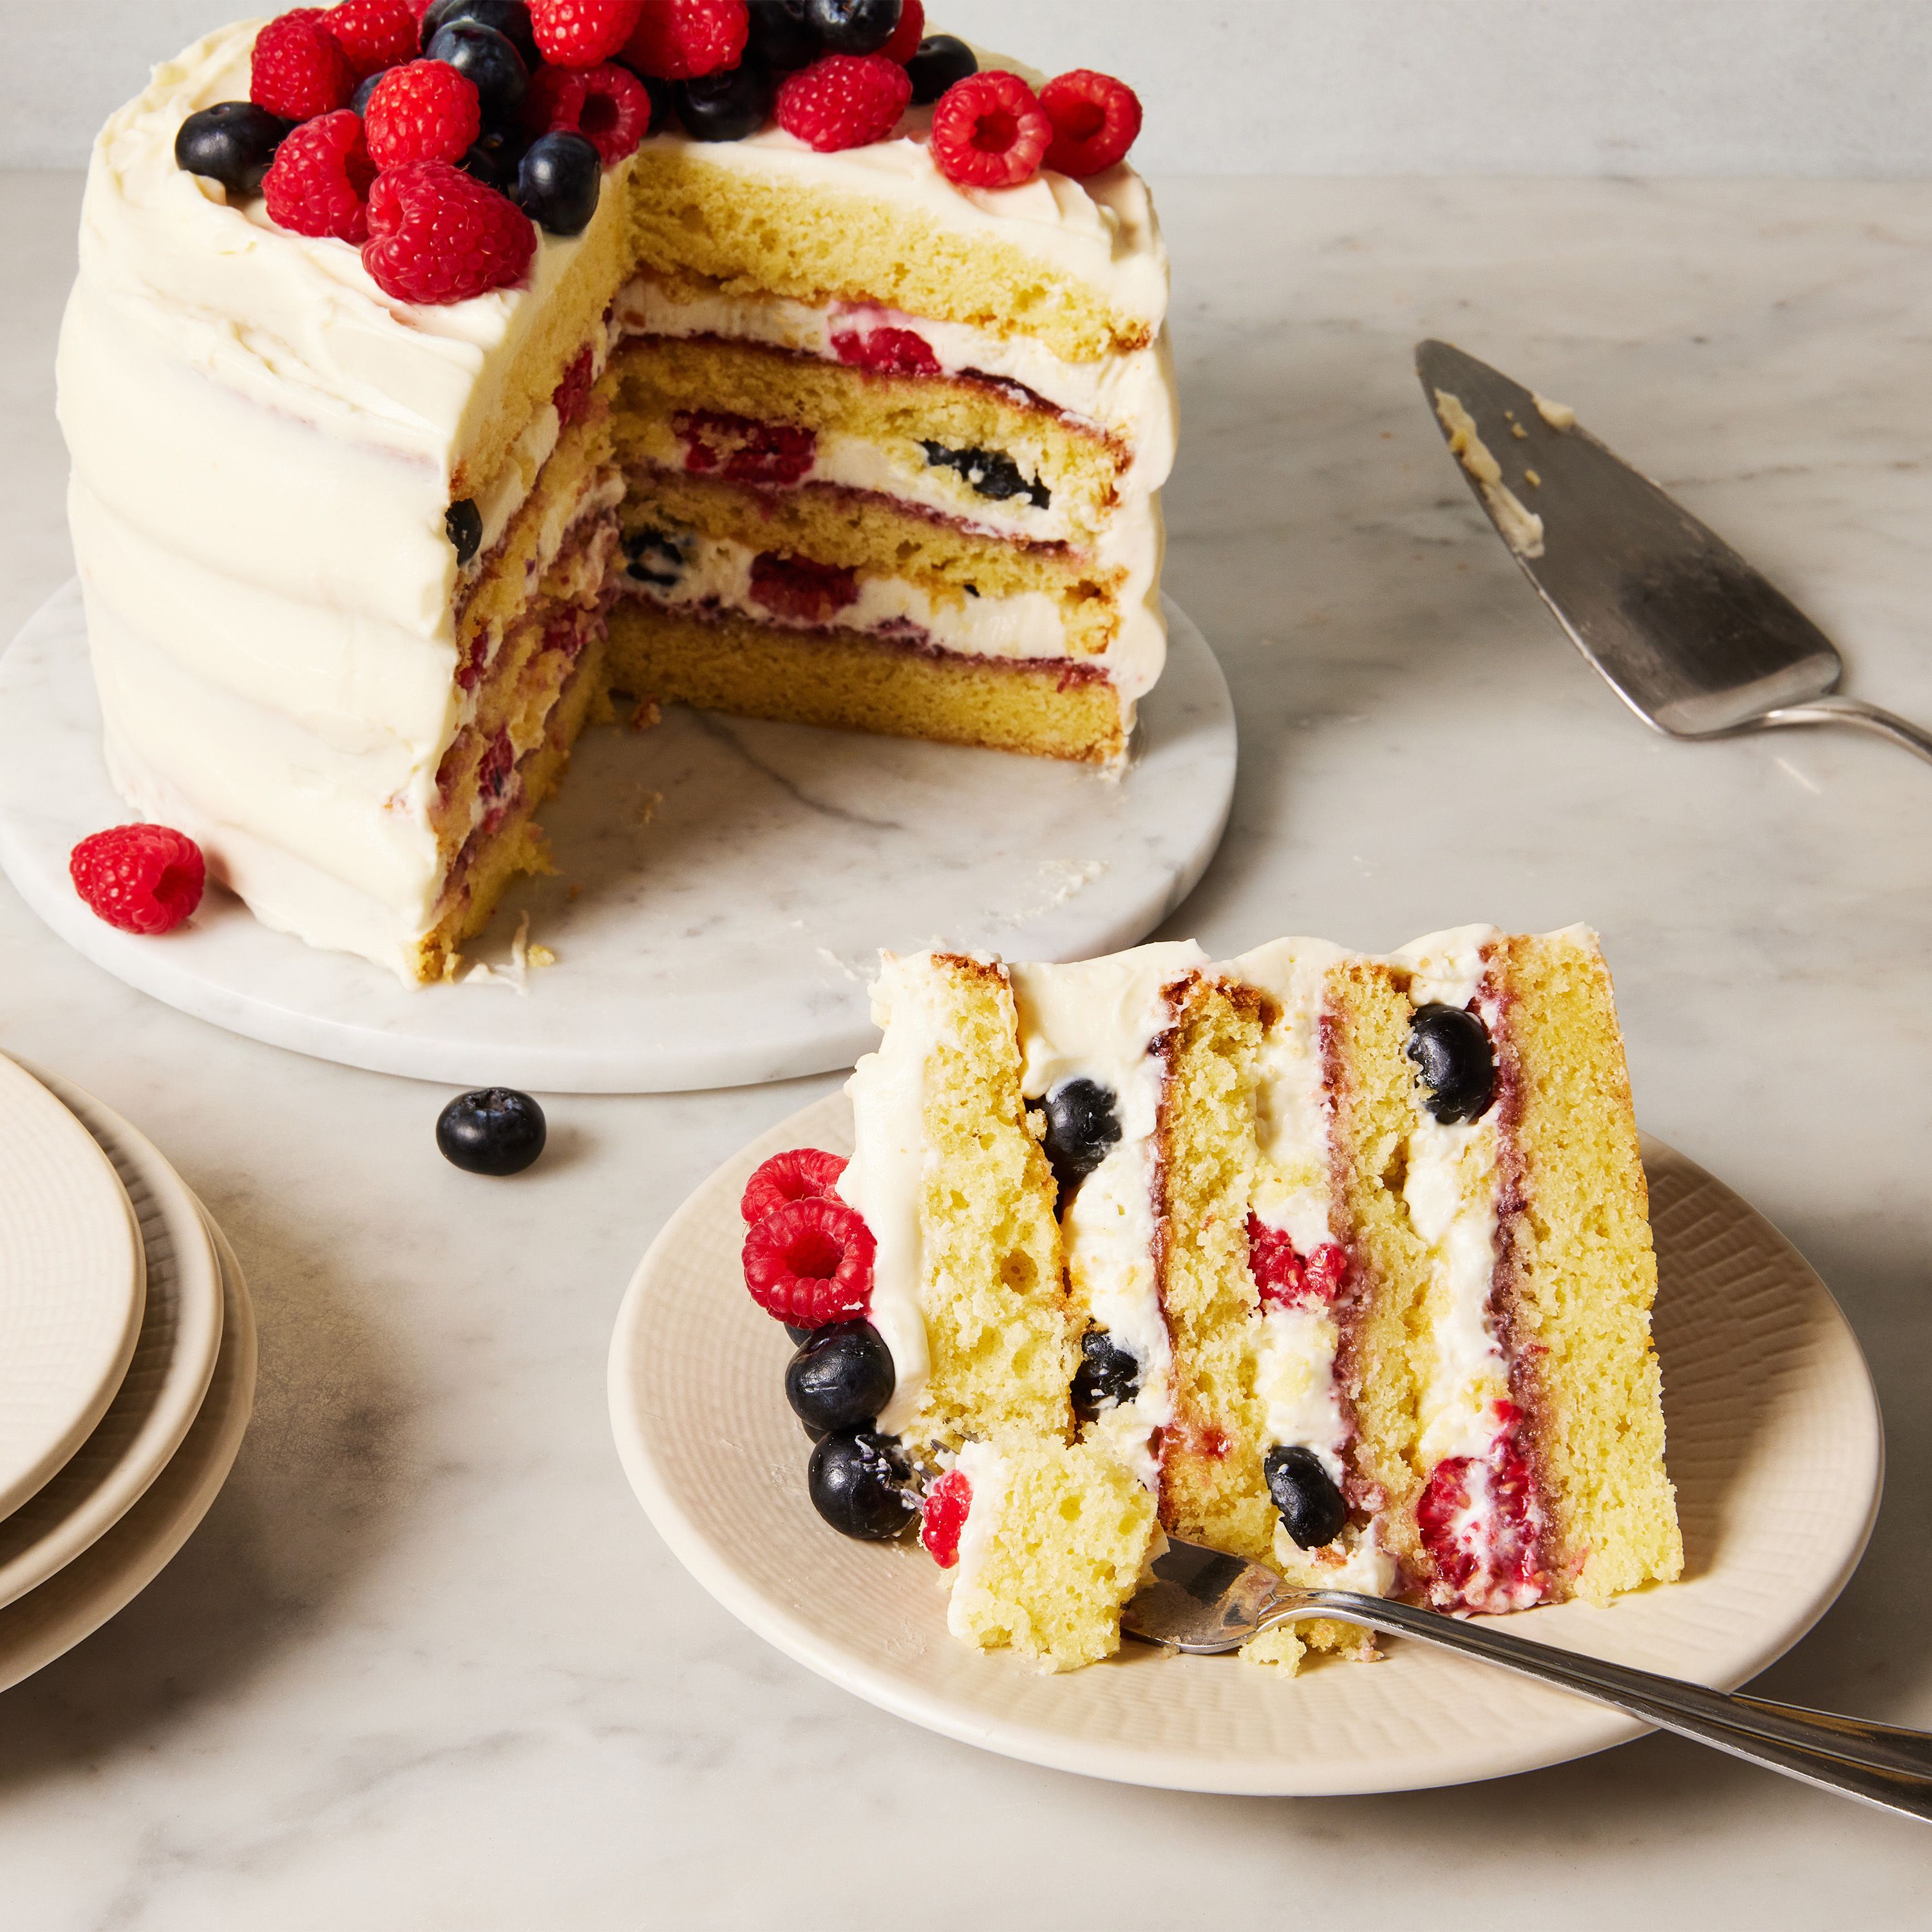 Hot Milk Sponge Cake with Berries - Savor the Best